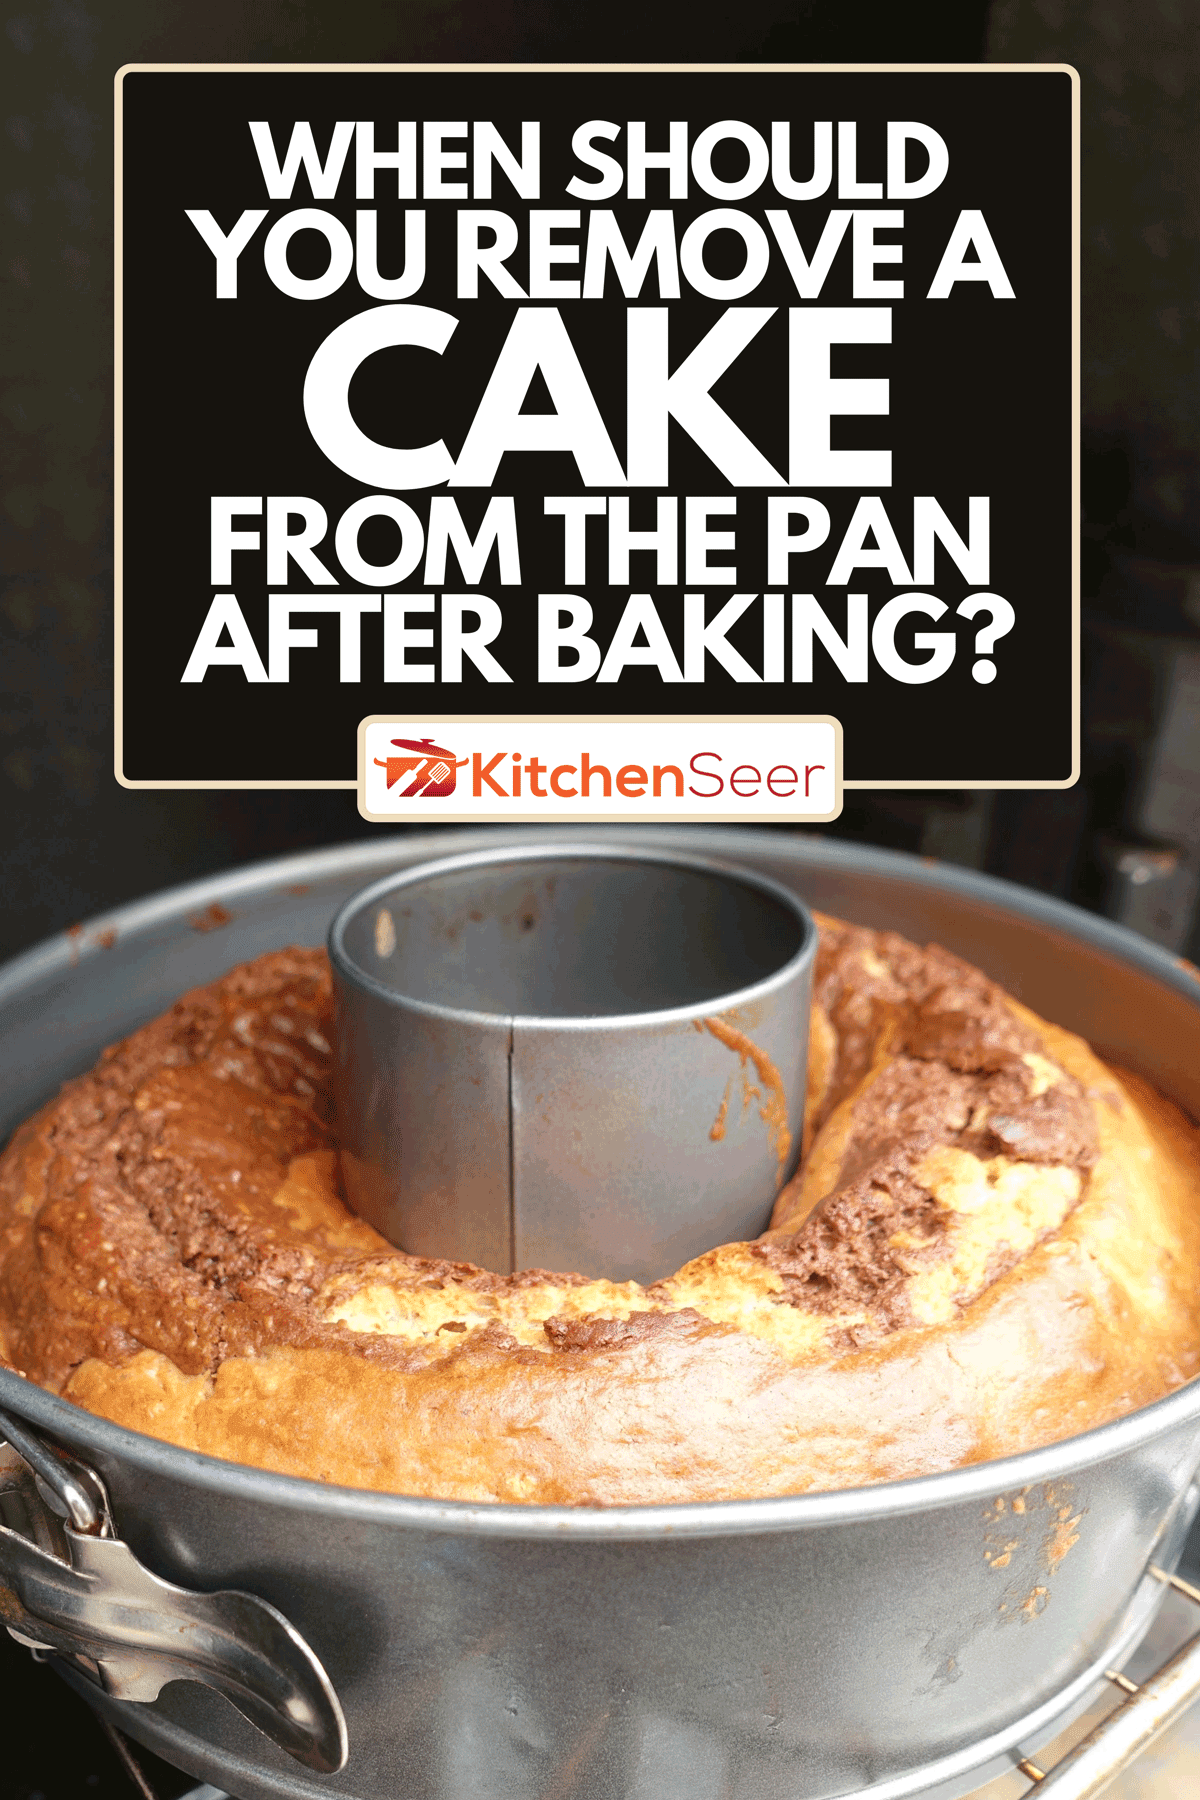 用蛋糕盘烤巧克力蛋糕，烤完后什么时候应该把蛋糕从蛋糕盘里拿出来?